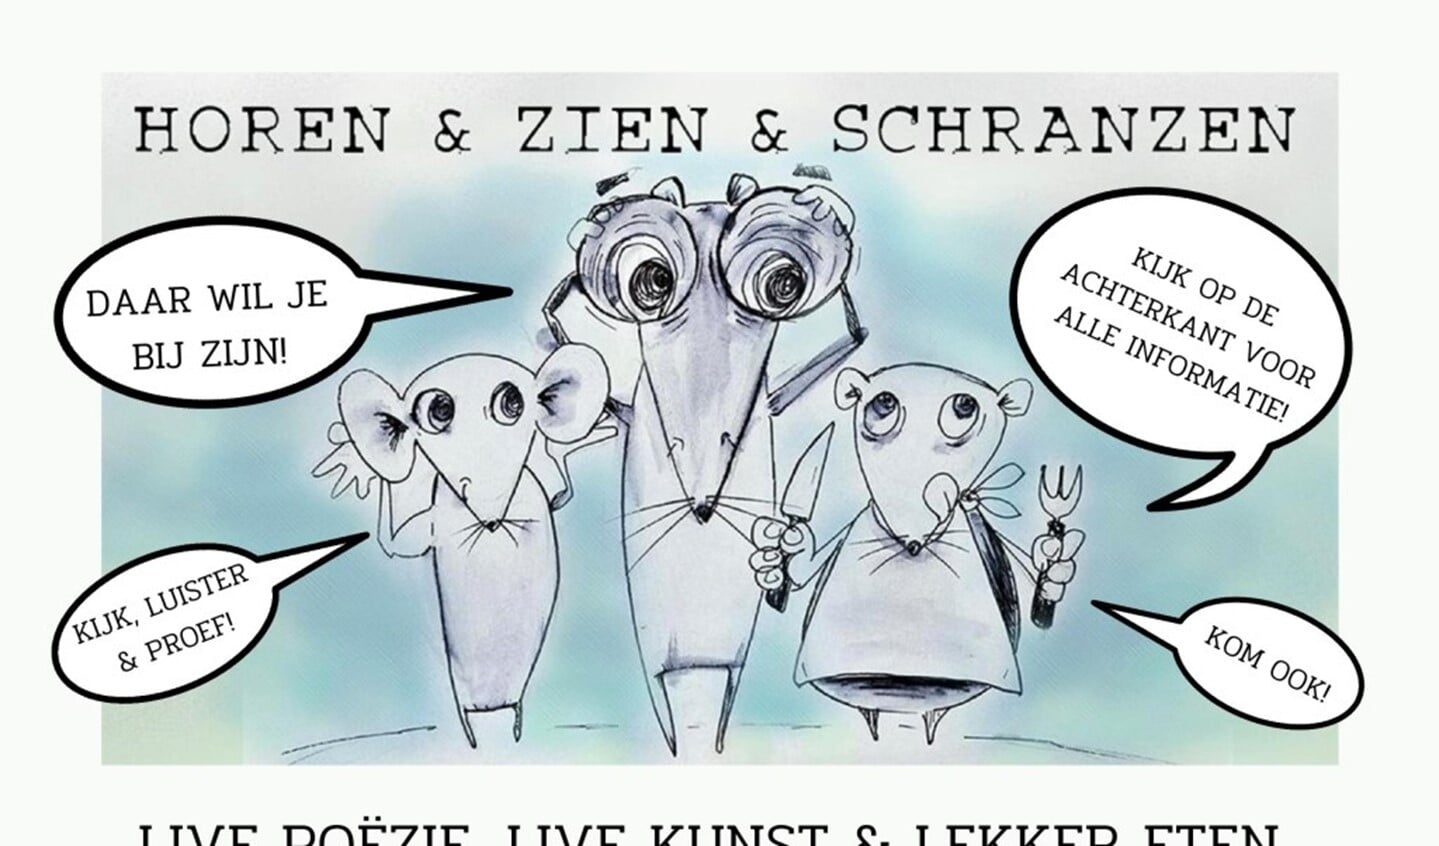 Flyer Horen & Zien & Schranzen (voorkant)